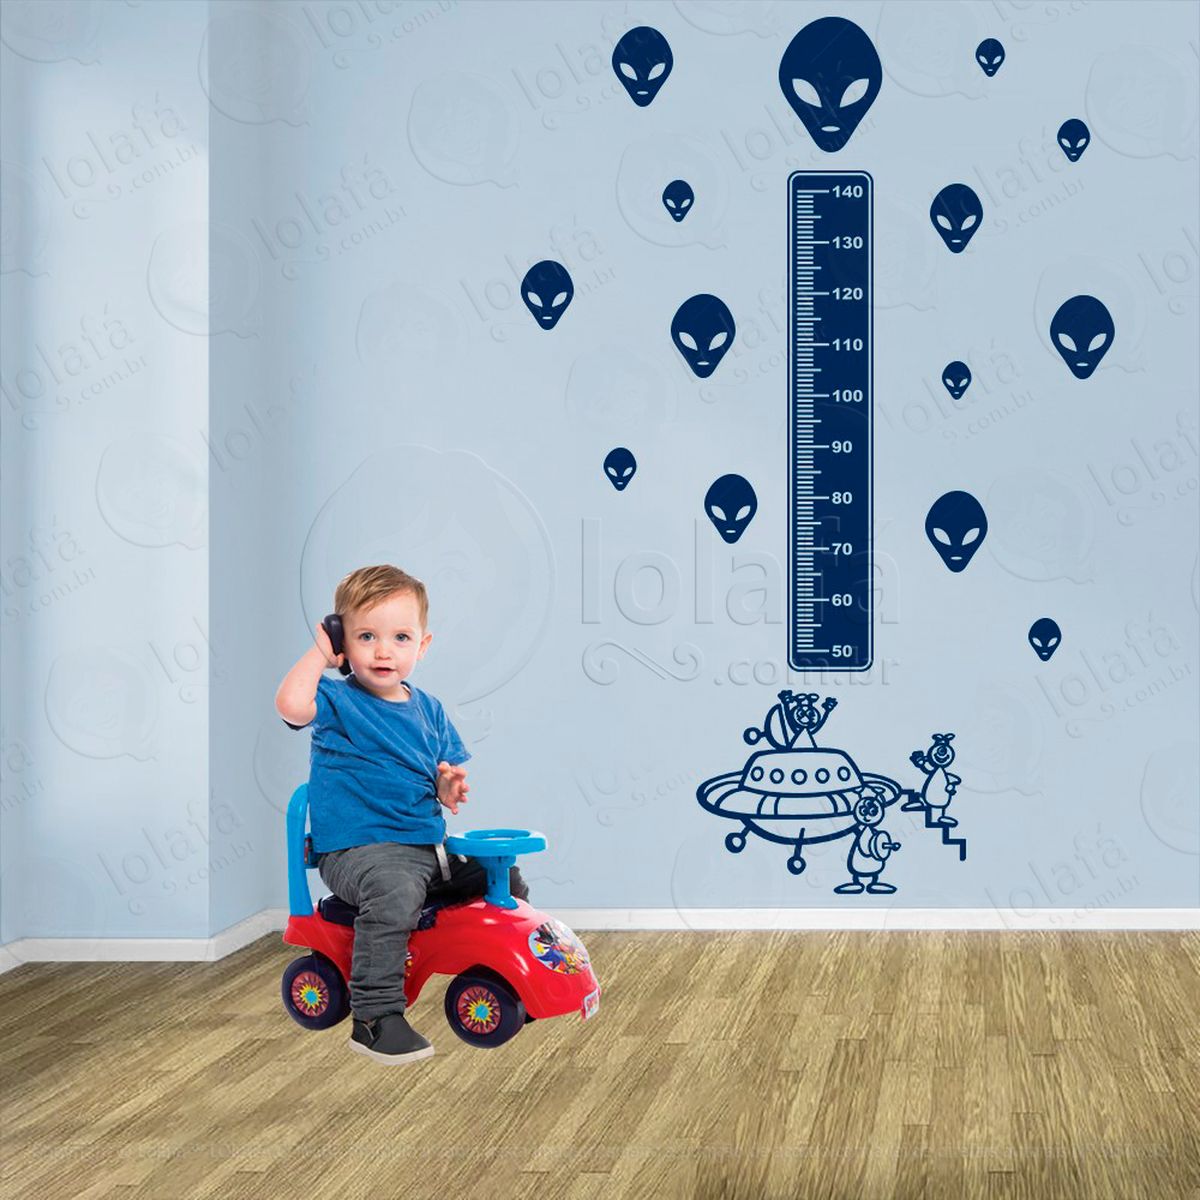 nave espacial e aliens adesivo régua de crescimento infantil, medidor de altura para quarto, porta e parede - mod:1287